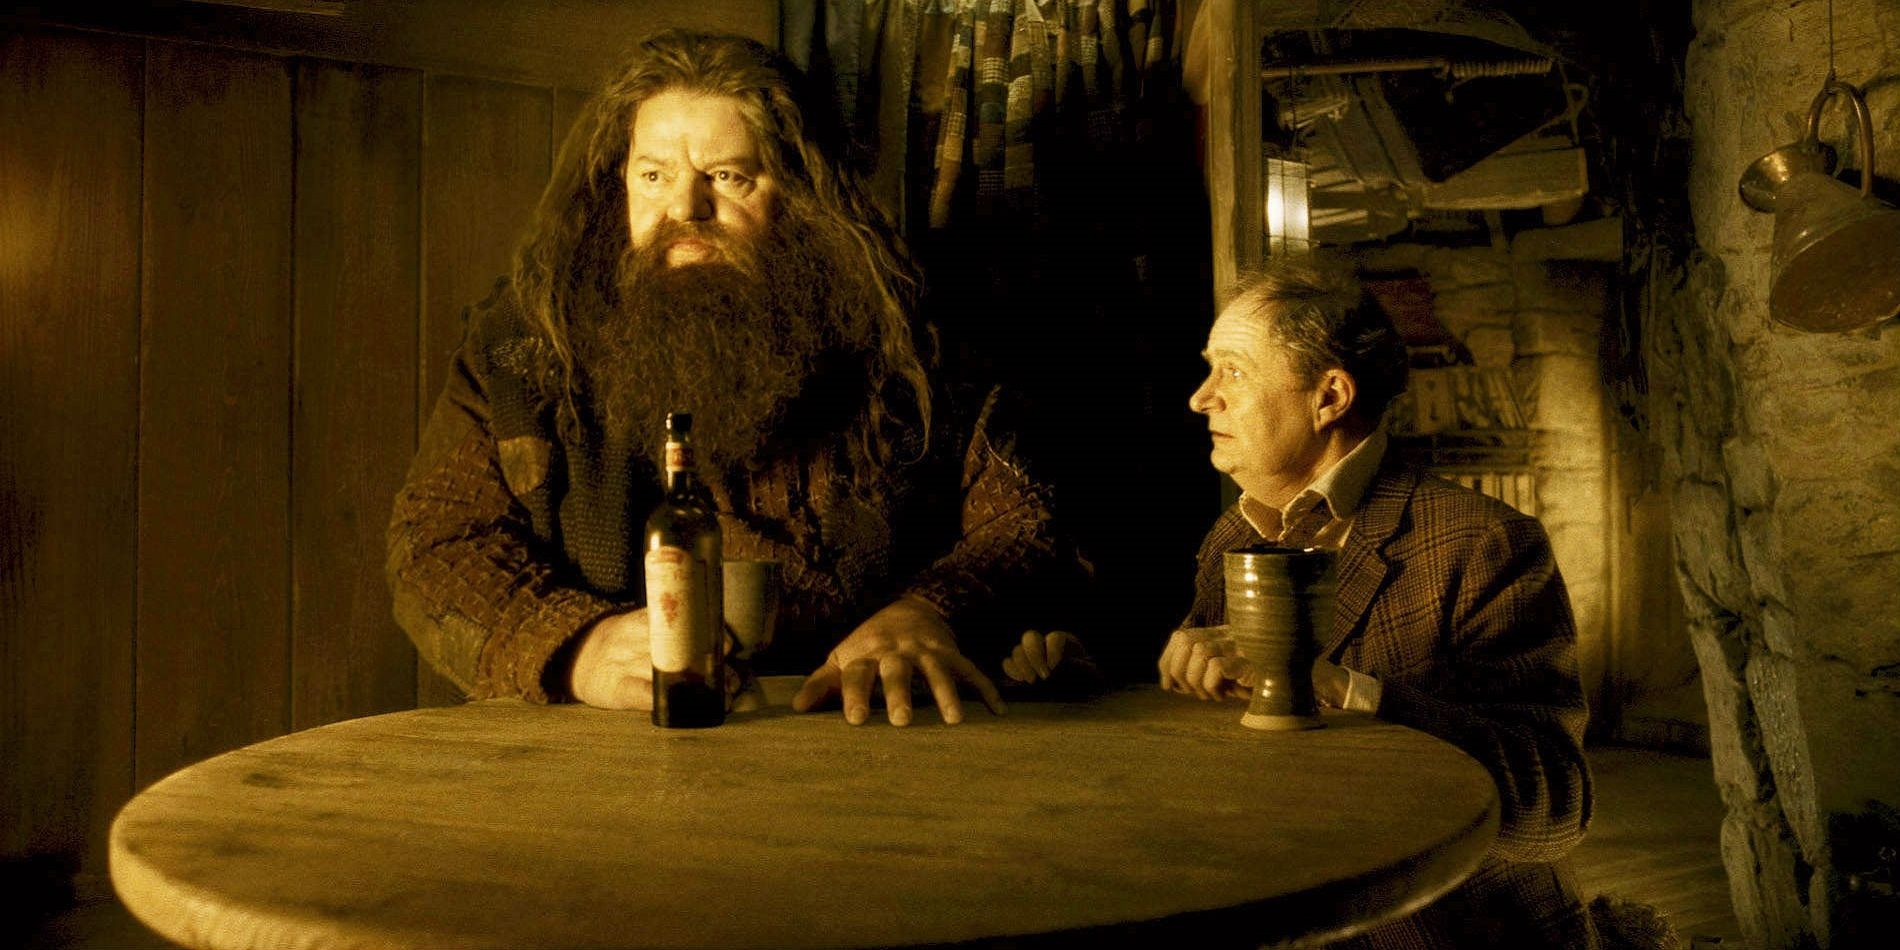 Hagrid and Slughorn drinking